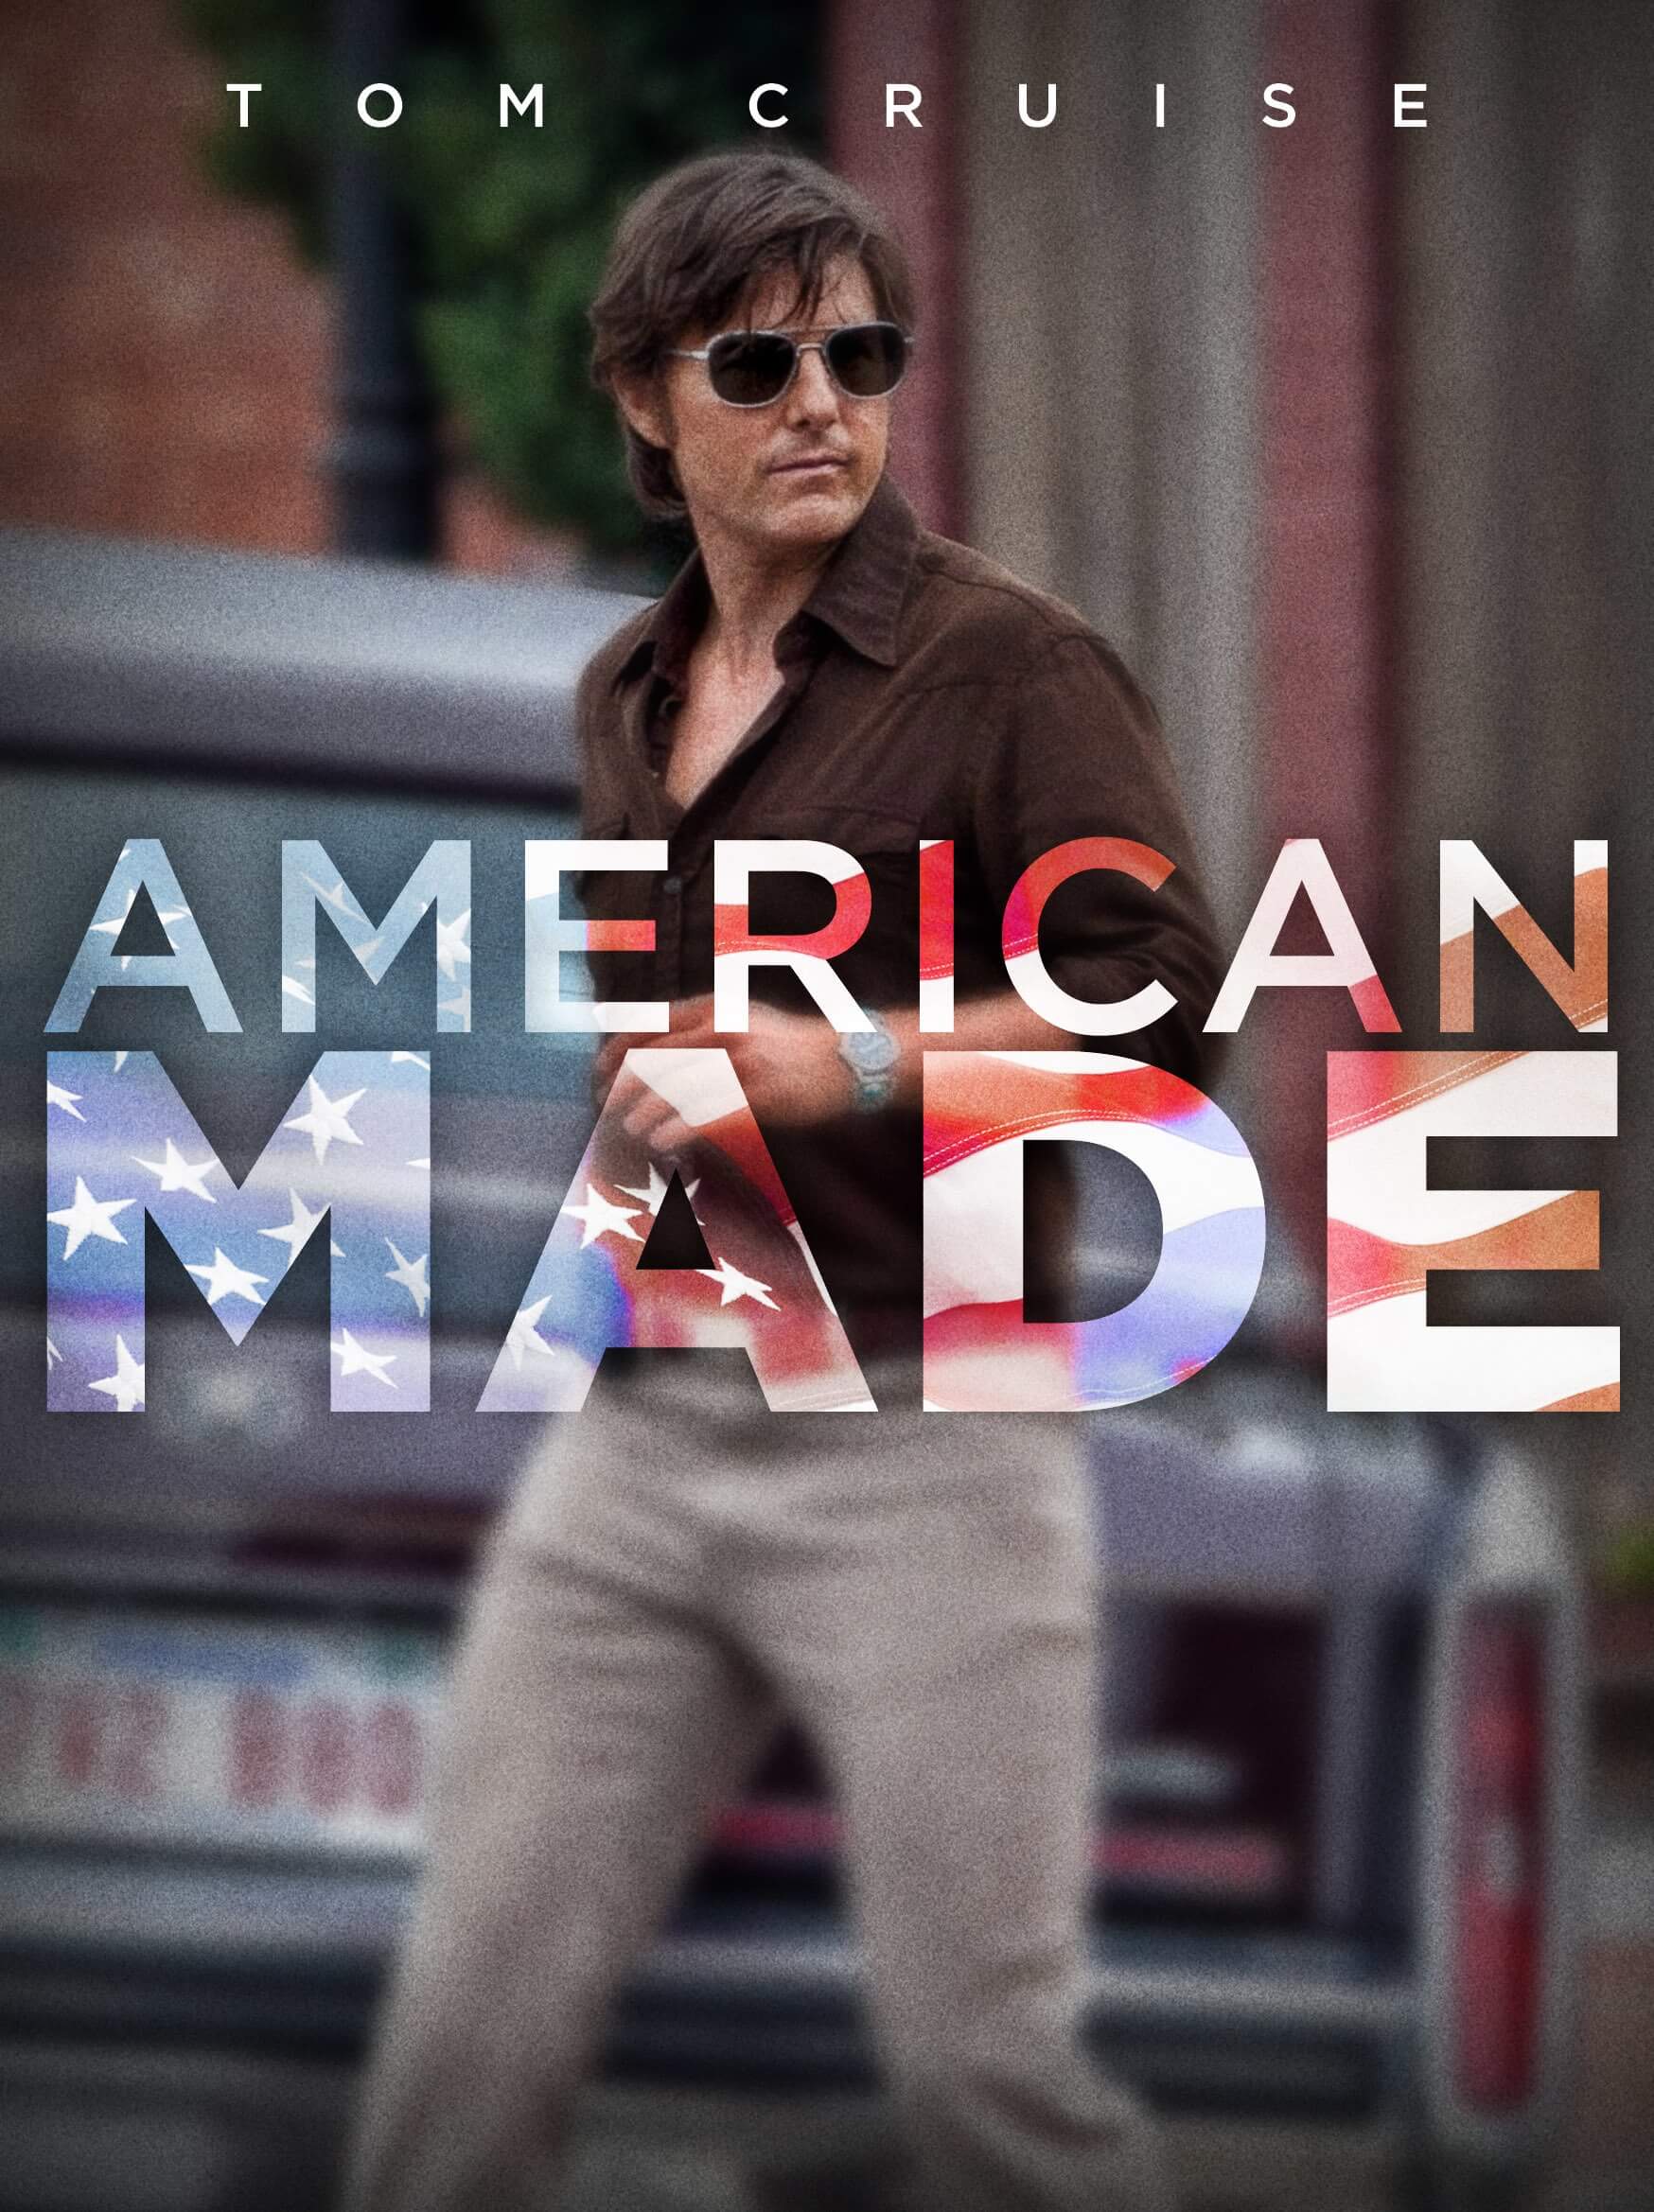 âAmerican Madeâ Review: Tom Cruise Thrills in this Lively True Story